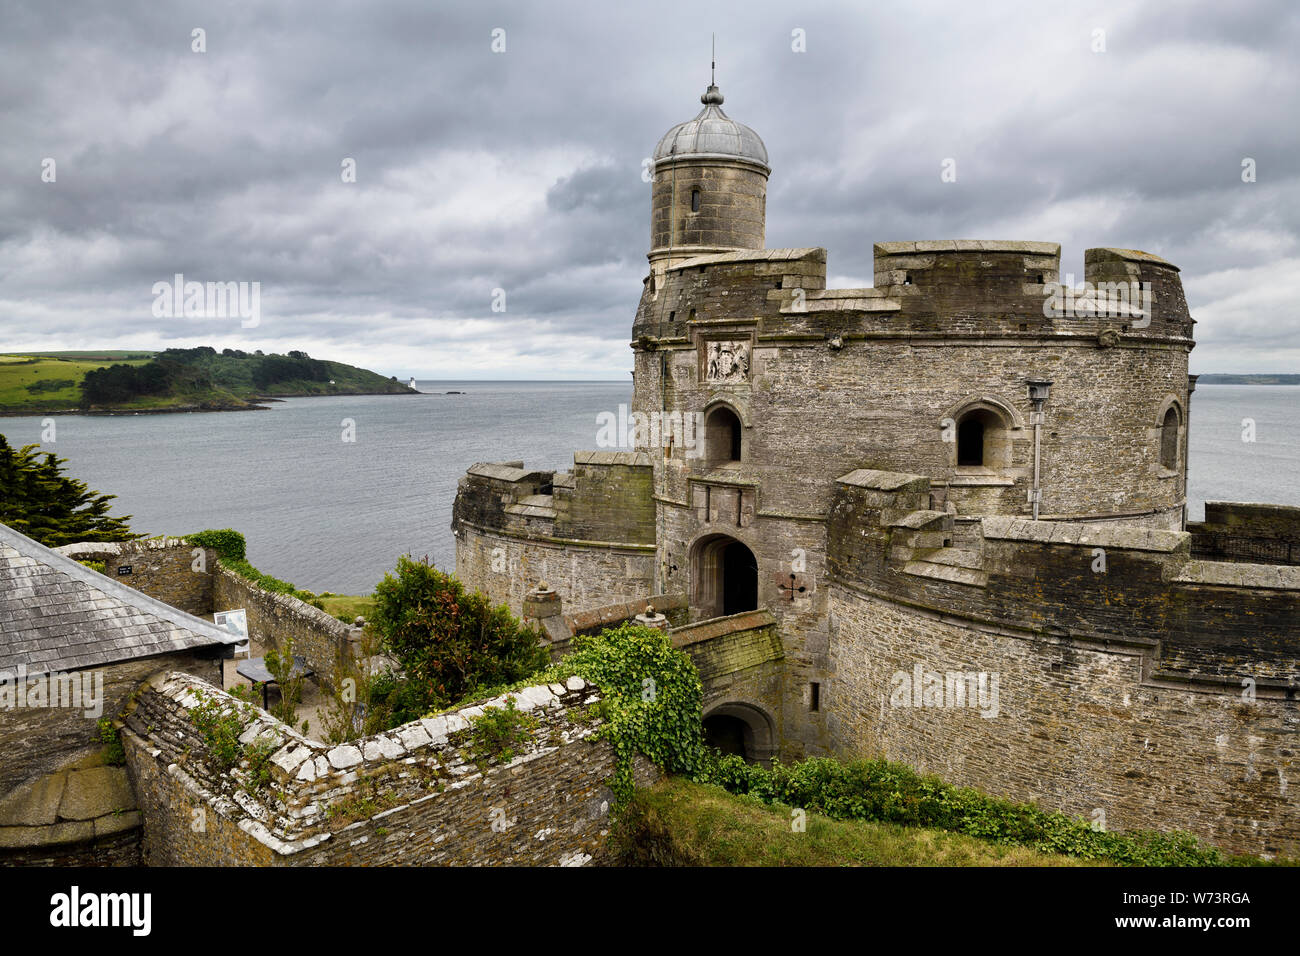 St Mawes château forteresse à la recherche de St Andrews le phare sur la côte de Carrick Roads et l'océan Atlantique dans la péninsule de Roseland Cornwall Angleterre Banque D'Images